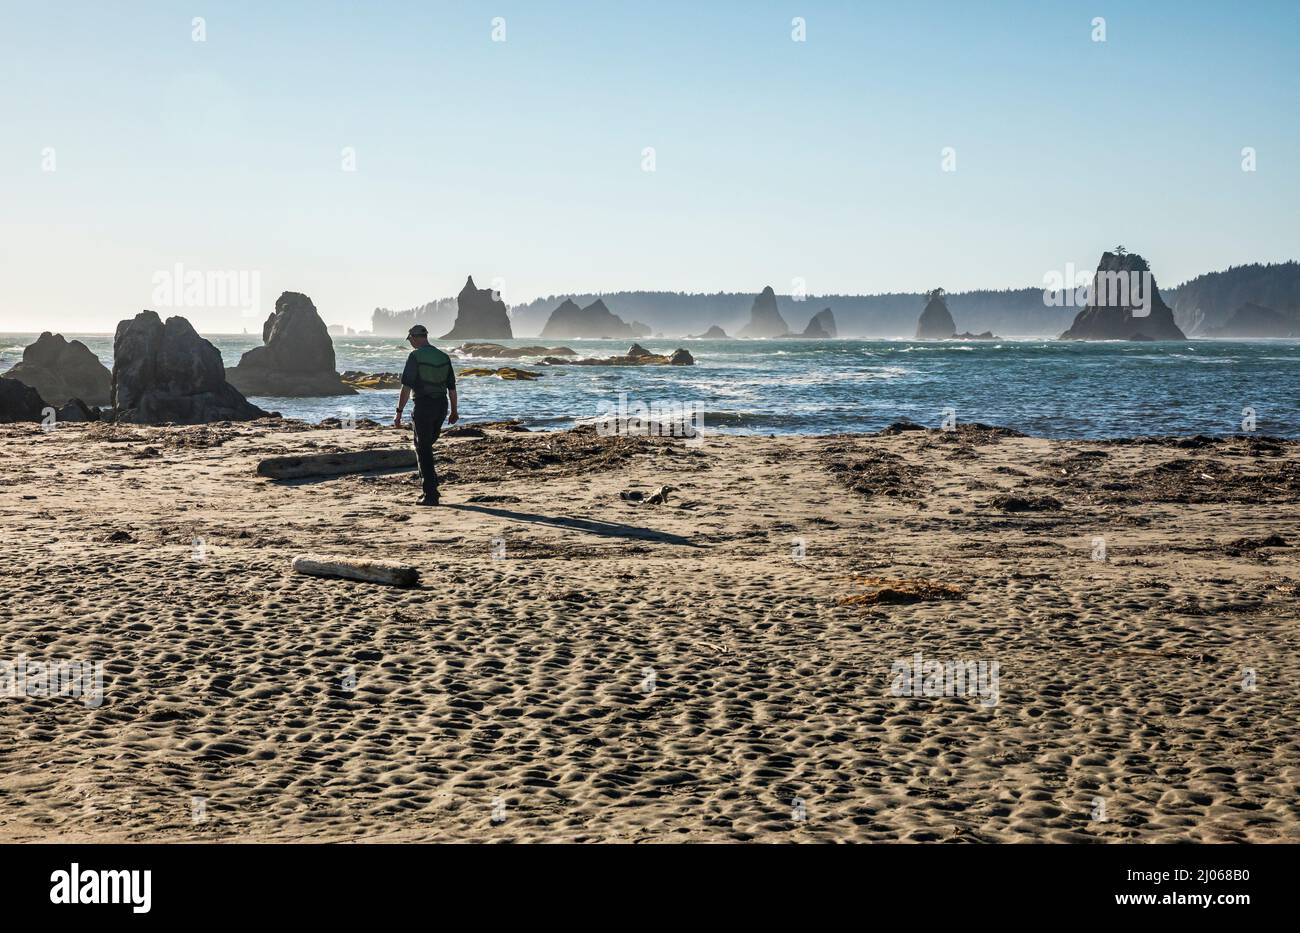 Un homme marche sur la plage à Toleak point en regardant vers le nord - la côte olympique de Washington et le sanctuaire marin. Banque D'Images